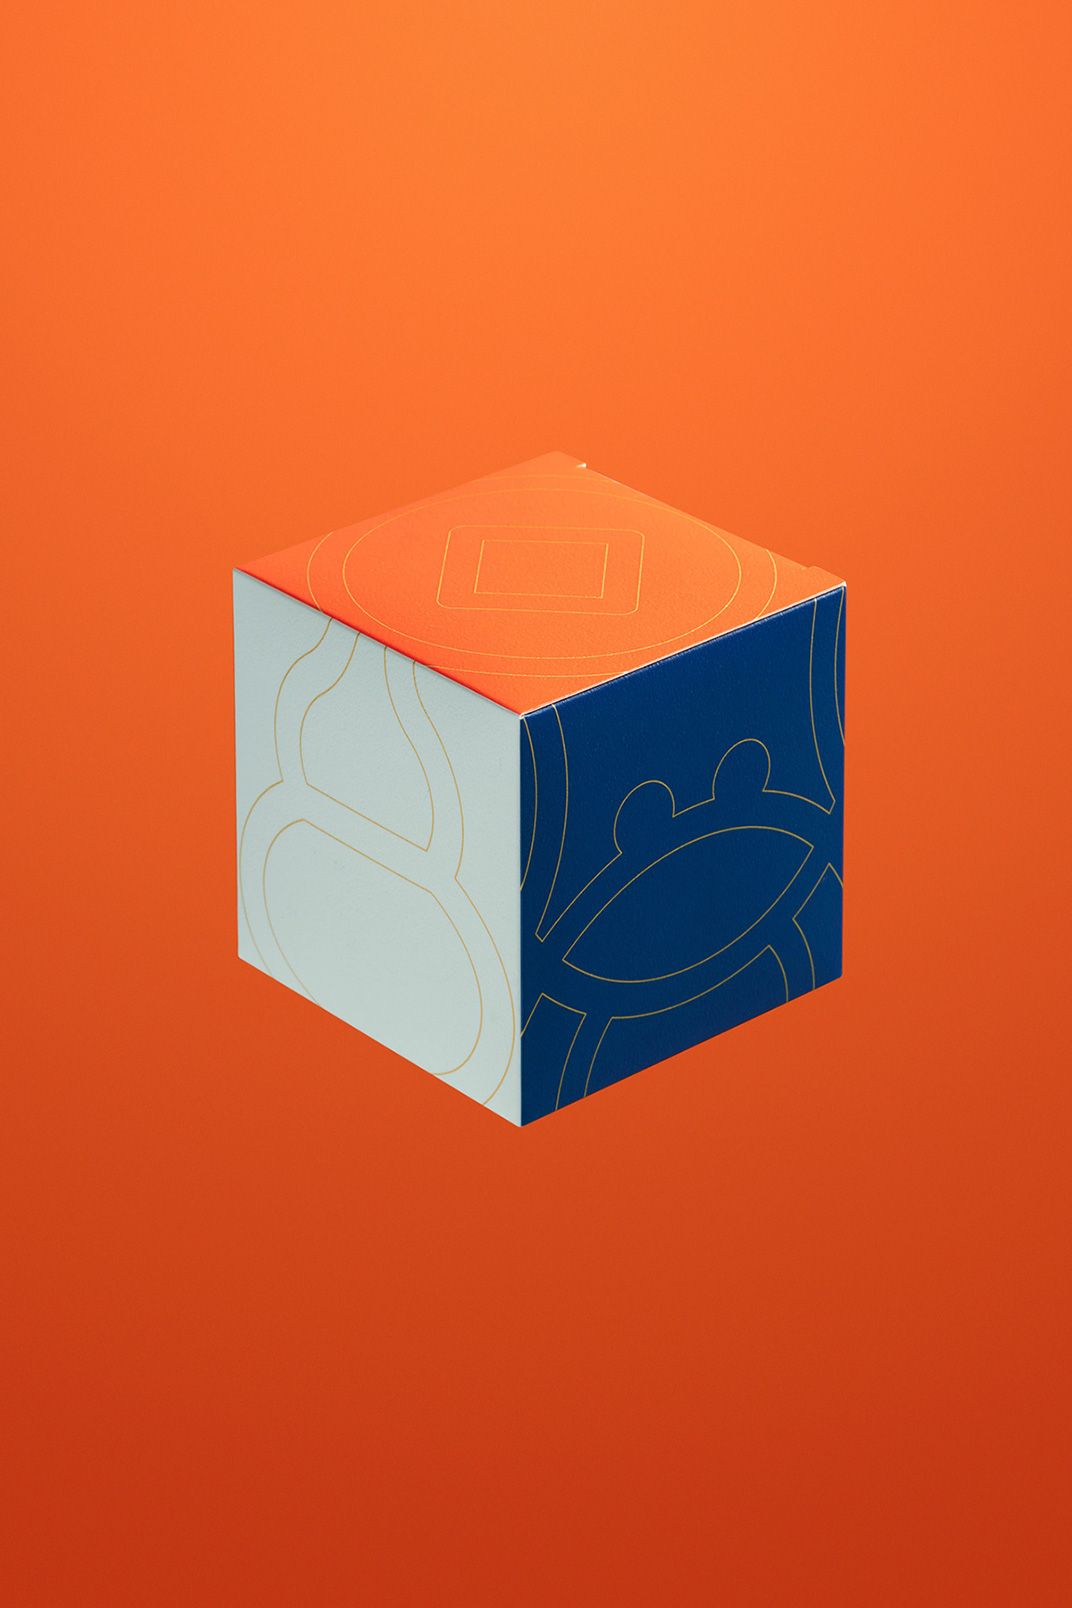 纯正吉祥的亮橙色套装包装设计 香港 礼盒 包装设计 插图设计 橙色 鱼 虾 蟹 鸡 logo设计 vi设计 空间设计